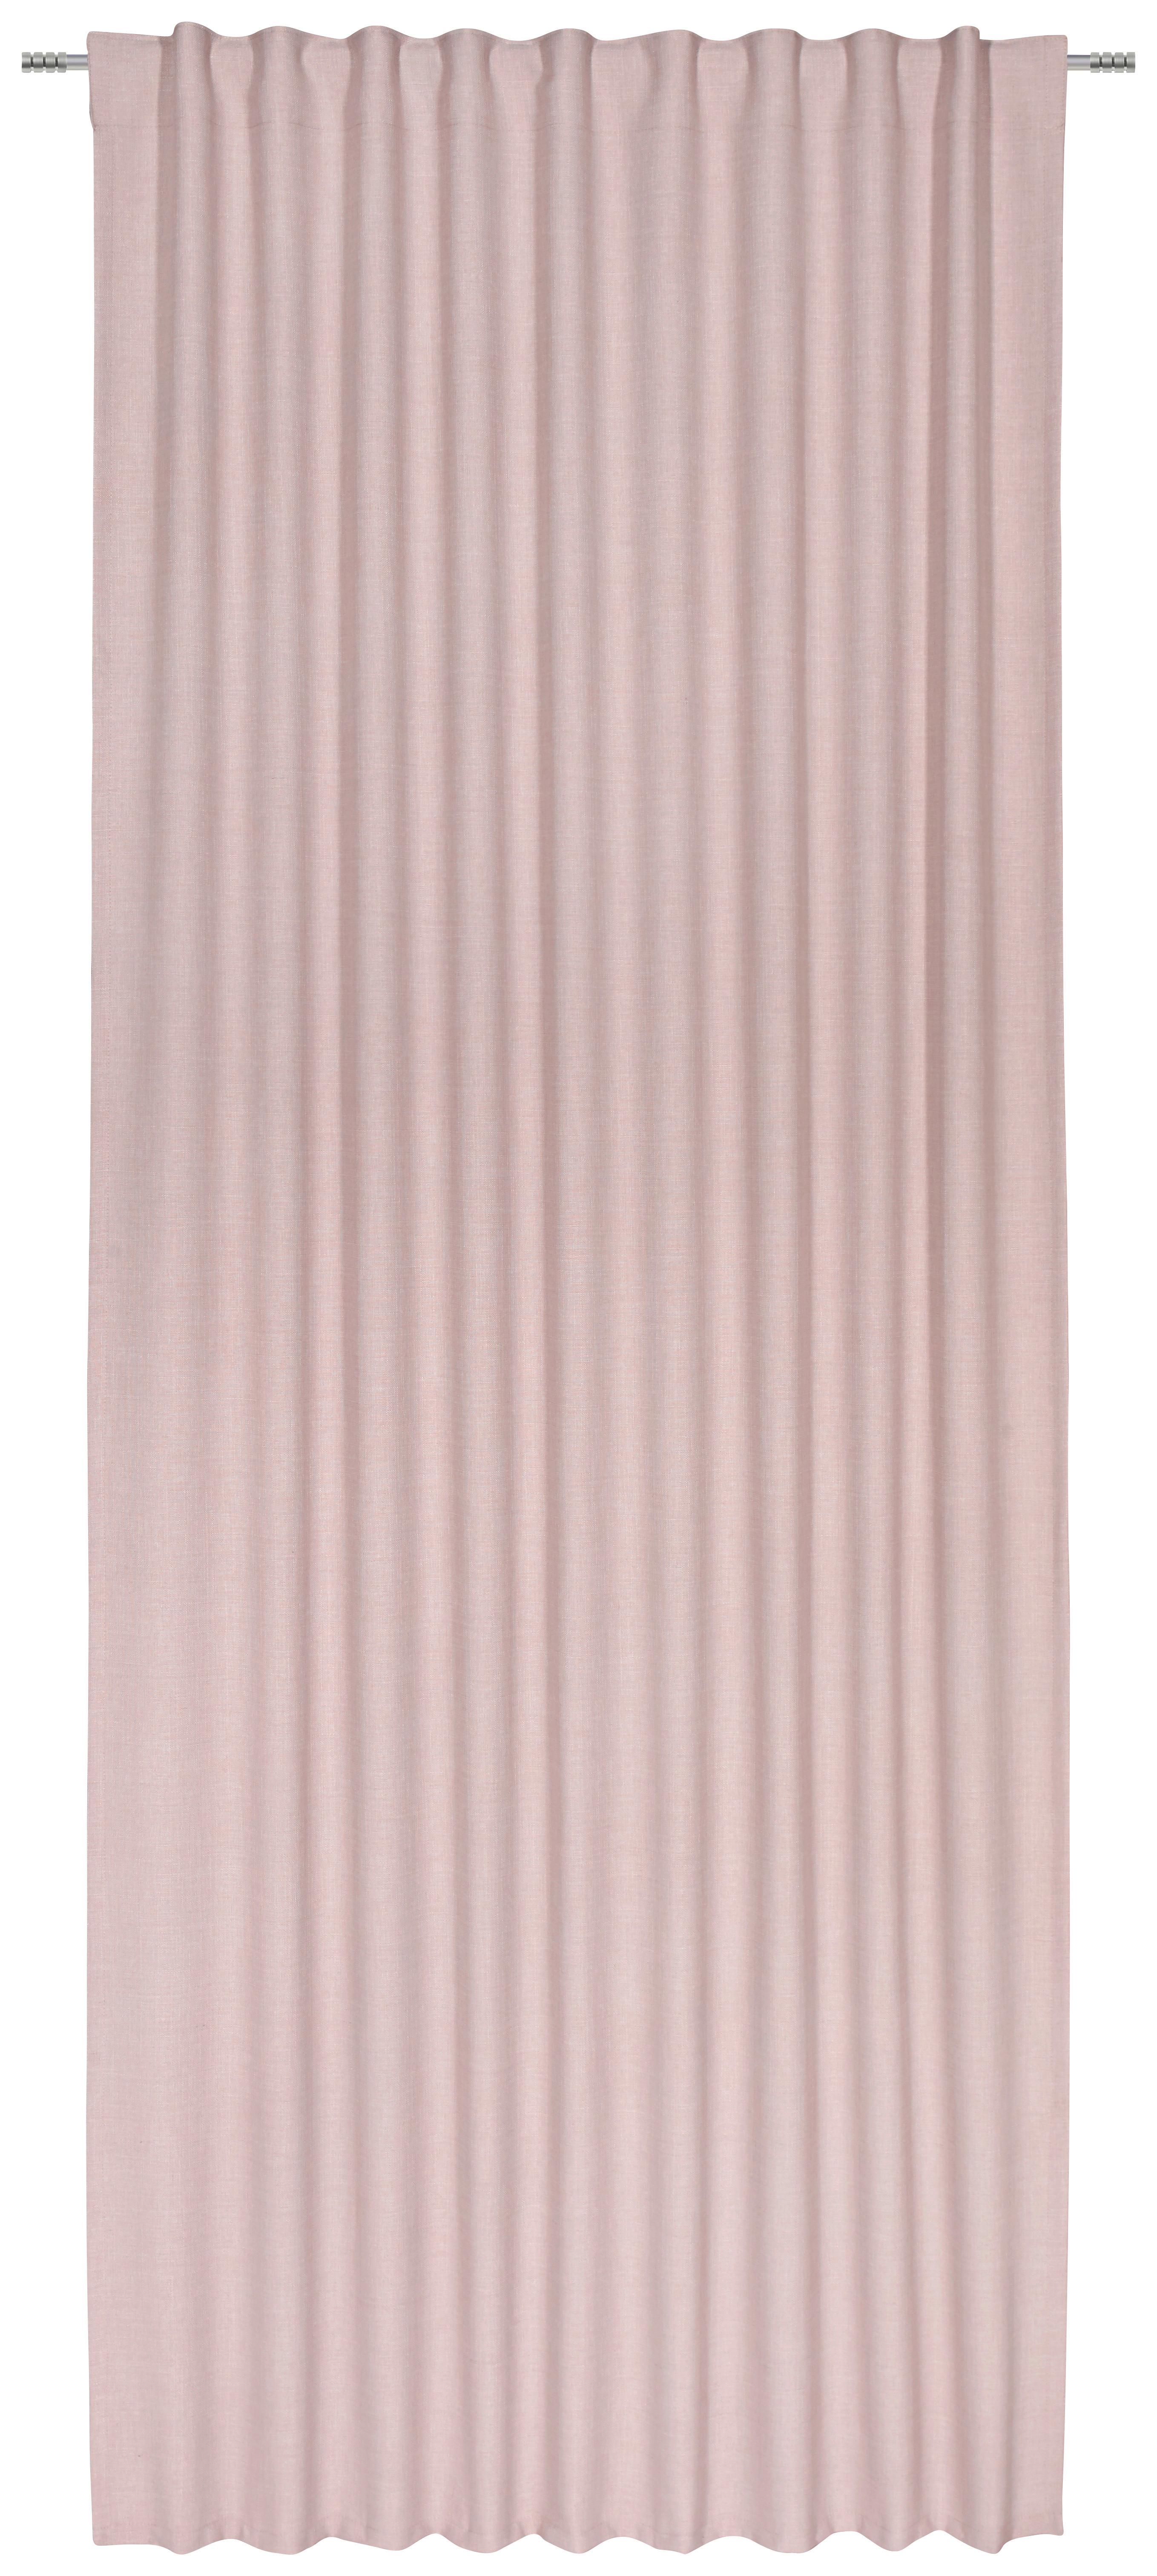 Závěs Leo, 135/255 Cm, Růžová - růžová, textil (135/255cm) - Premium Living